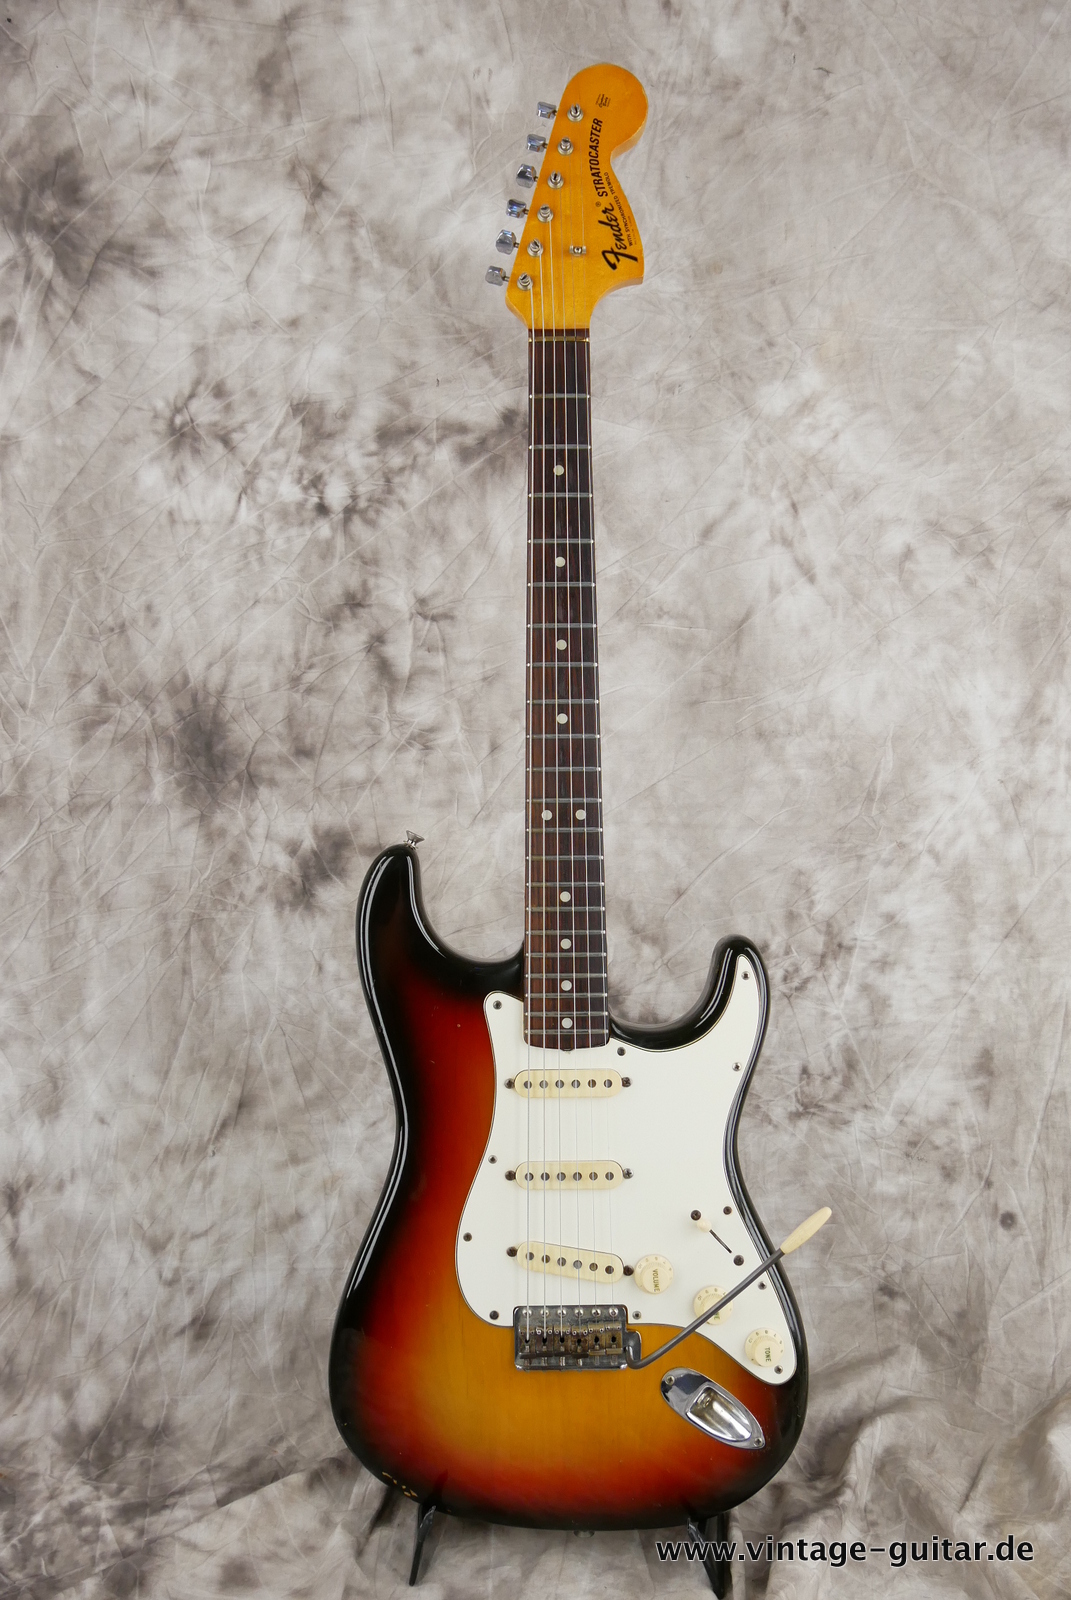 Fender-Stratocaster-1971-sunburst-4-hole-001.JPG